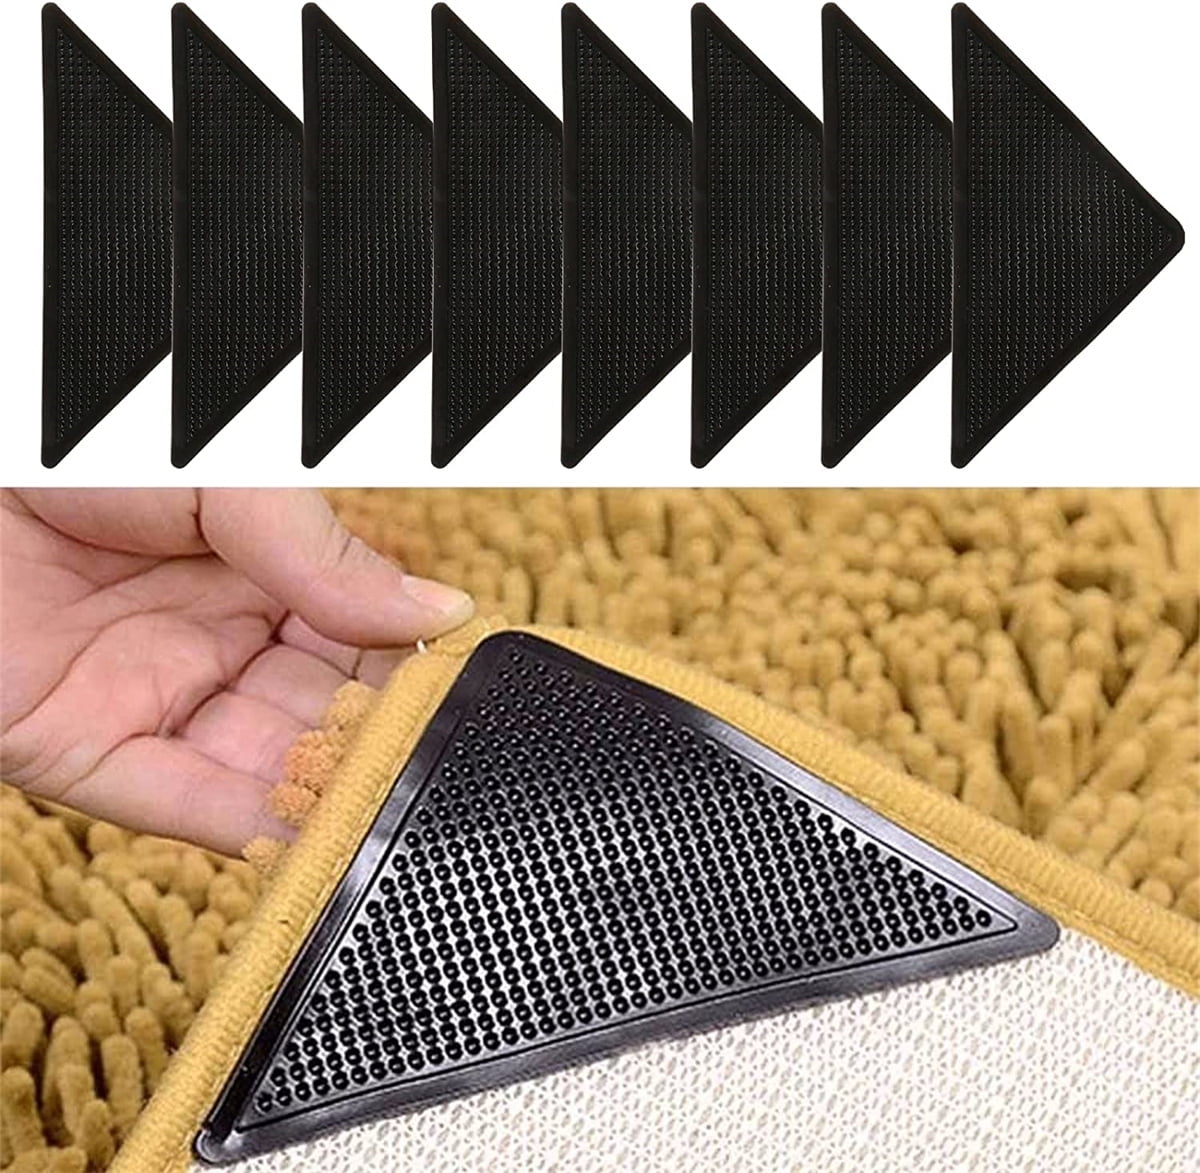 Non Slip Rug Pad Grippers - 5x6.5 Ft for Hardwood Floors, Mattress Slide  Stopper Thick Carpet Pads Gripper for Tile Floors,Rug Grip for Area